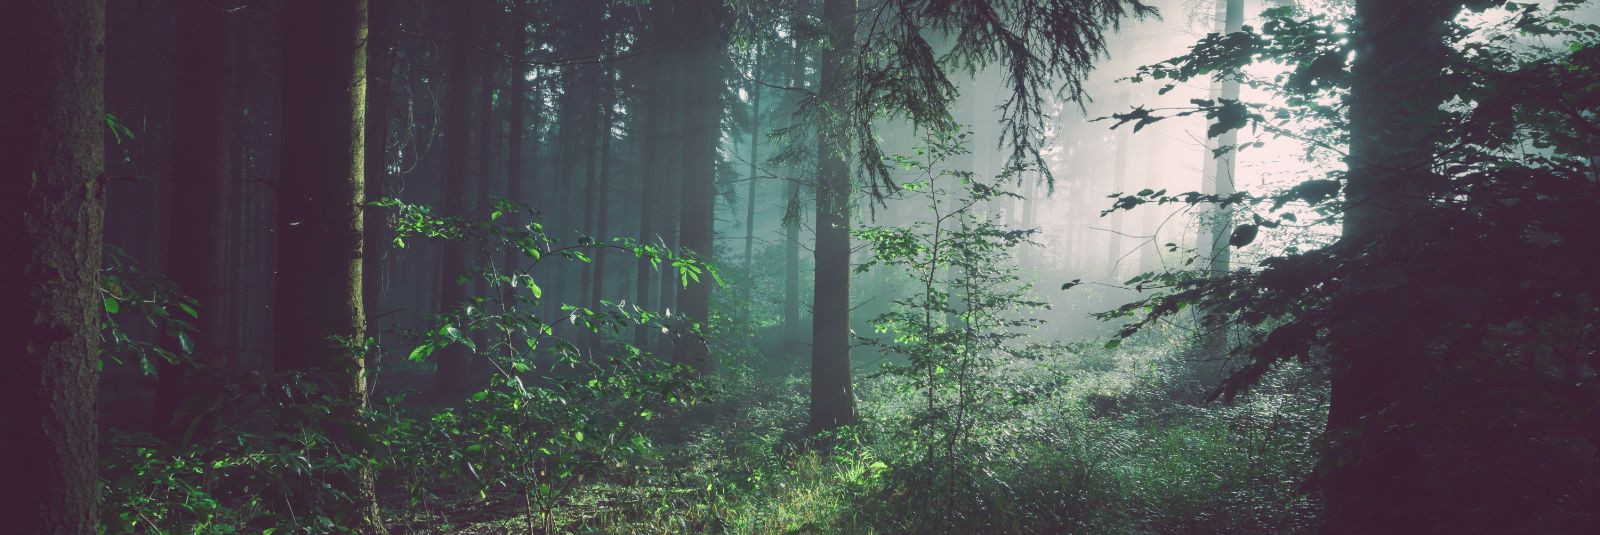 Kui räägime metsast, räägime meie – OK Mets OÜ-st, Eesti kapitalil põhinevast ettevõttest, mis on olnud metsanduse alal liidriks juba alates 2007. aastast. Olem